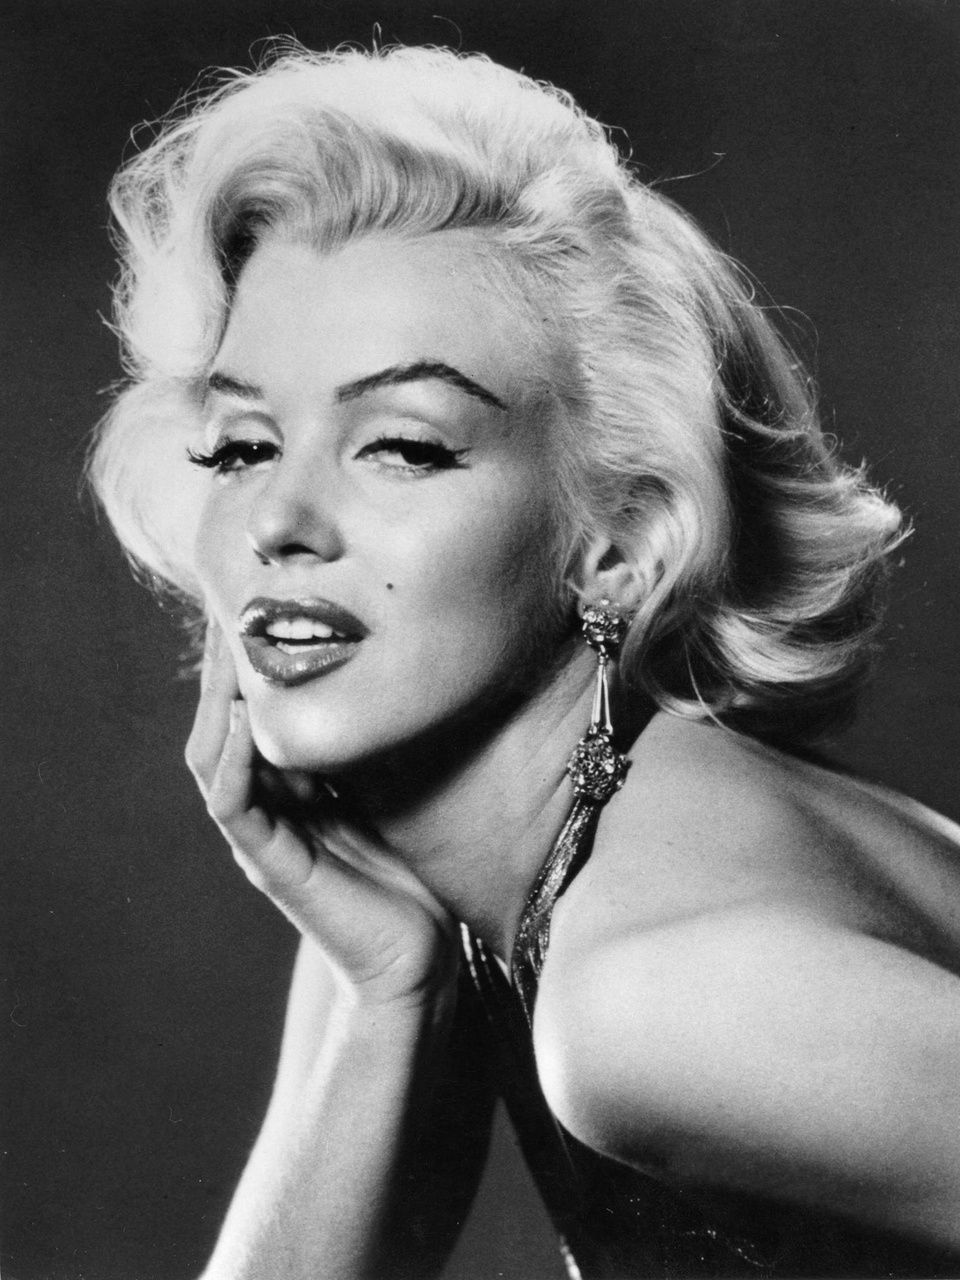 Marilyn-Monroe-marilyn-monroe-30014001-960-1280.jpg